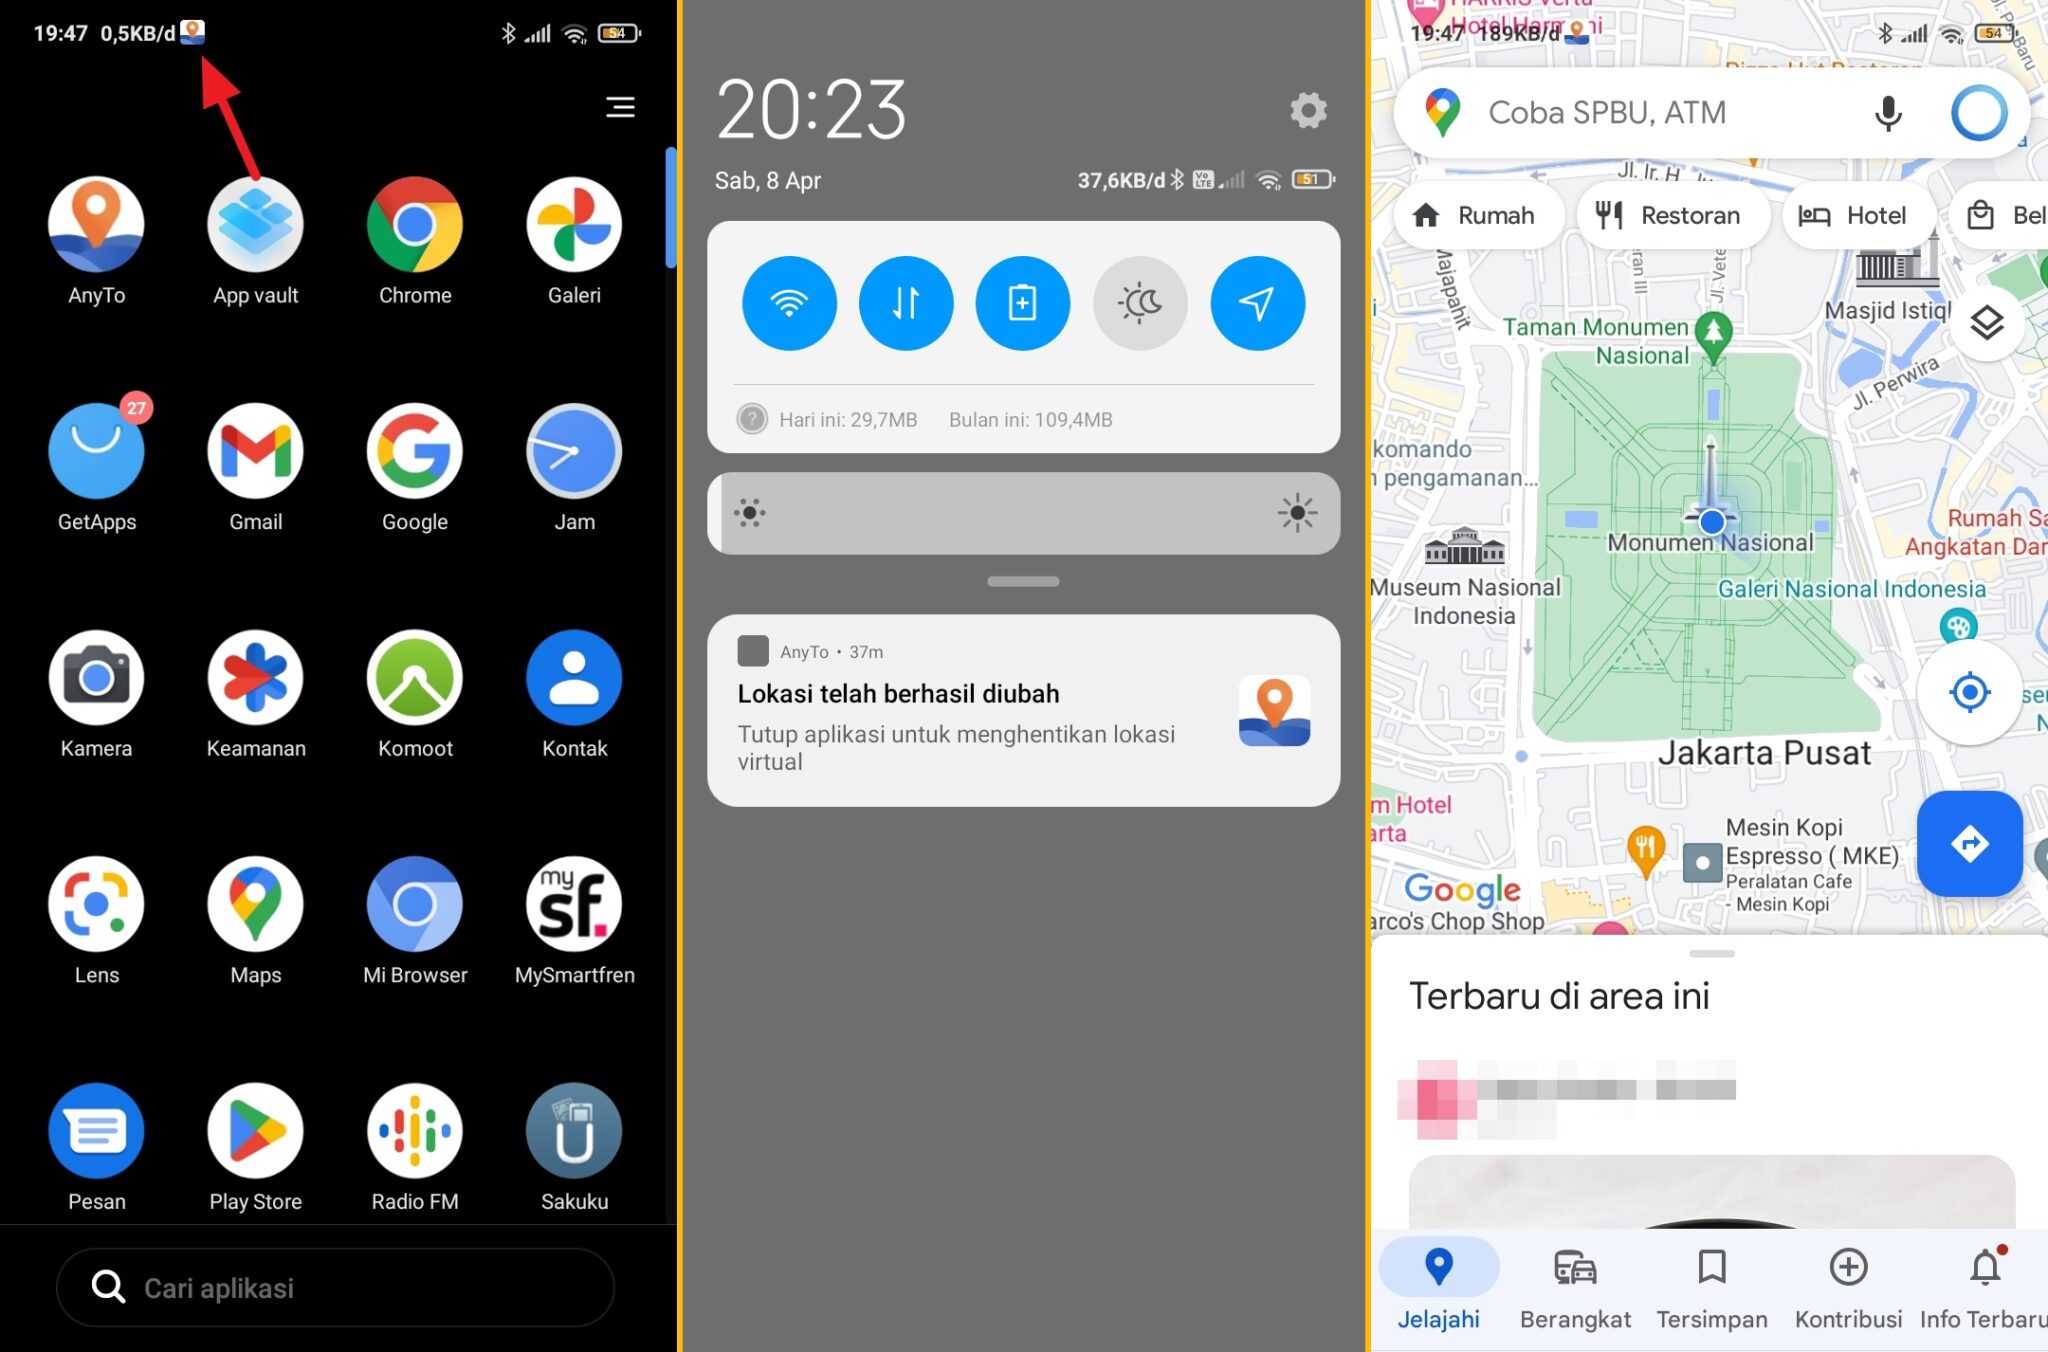 fake gps berjalan scaled Cara Menggunakan Fake GPS di Android 100% Tanpa Root! 13 fake gps berjalan scaled